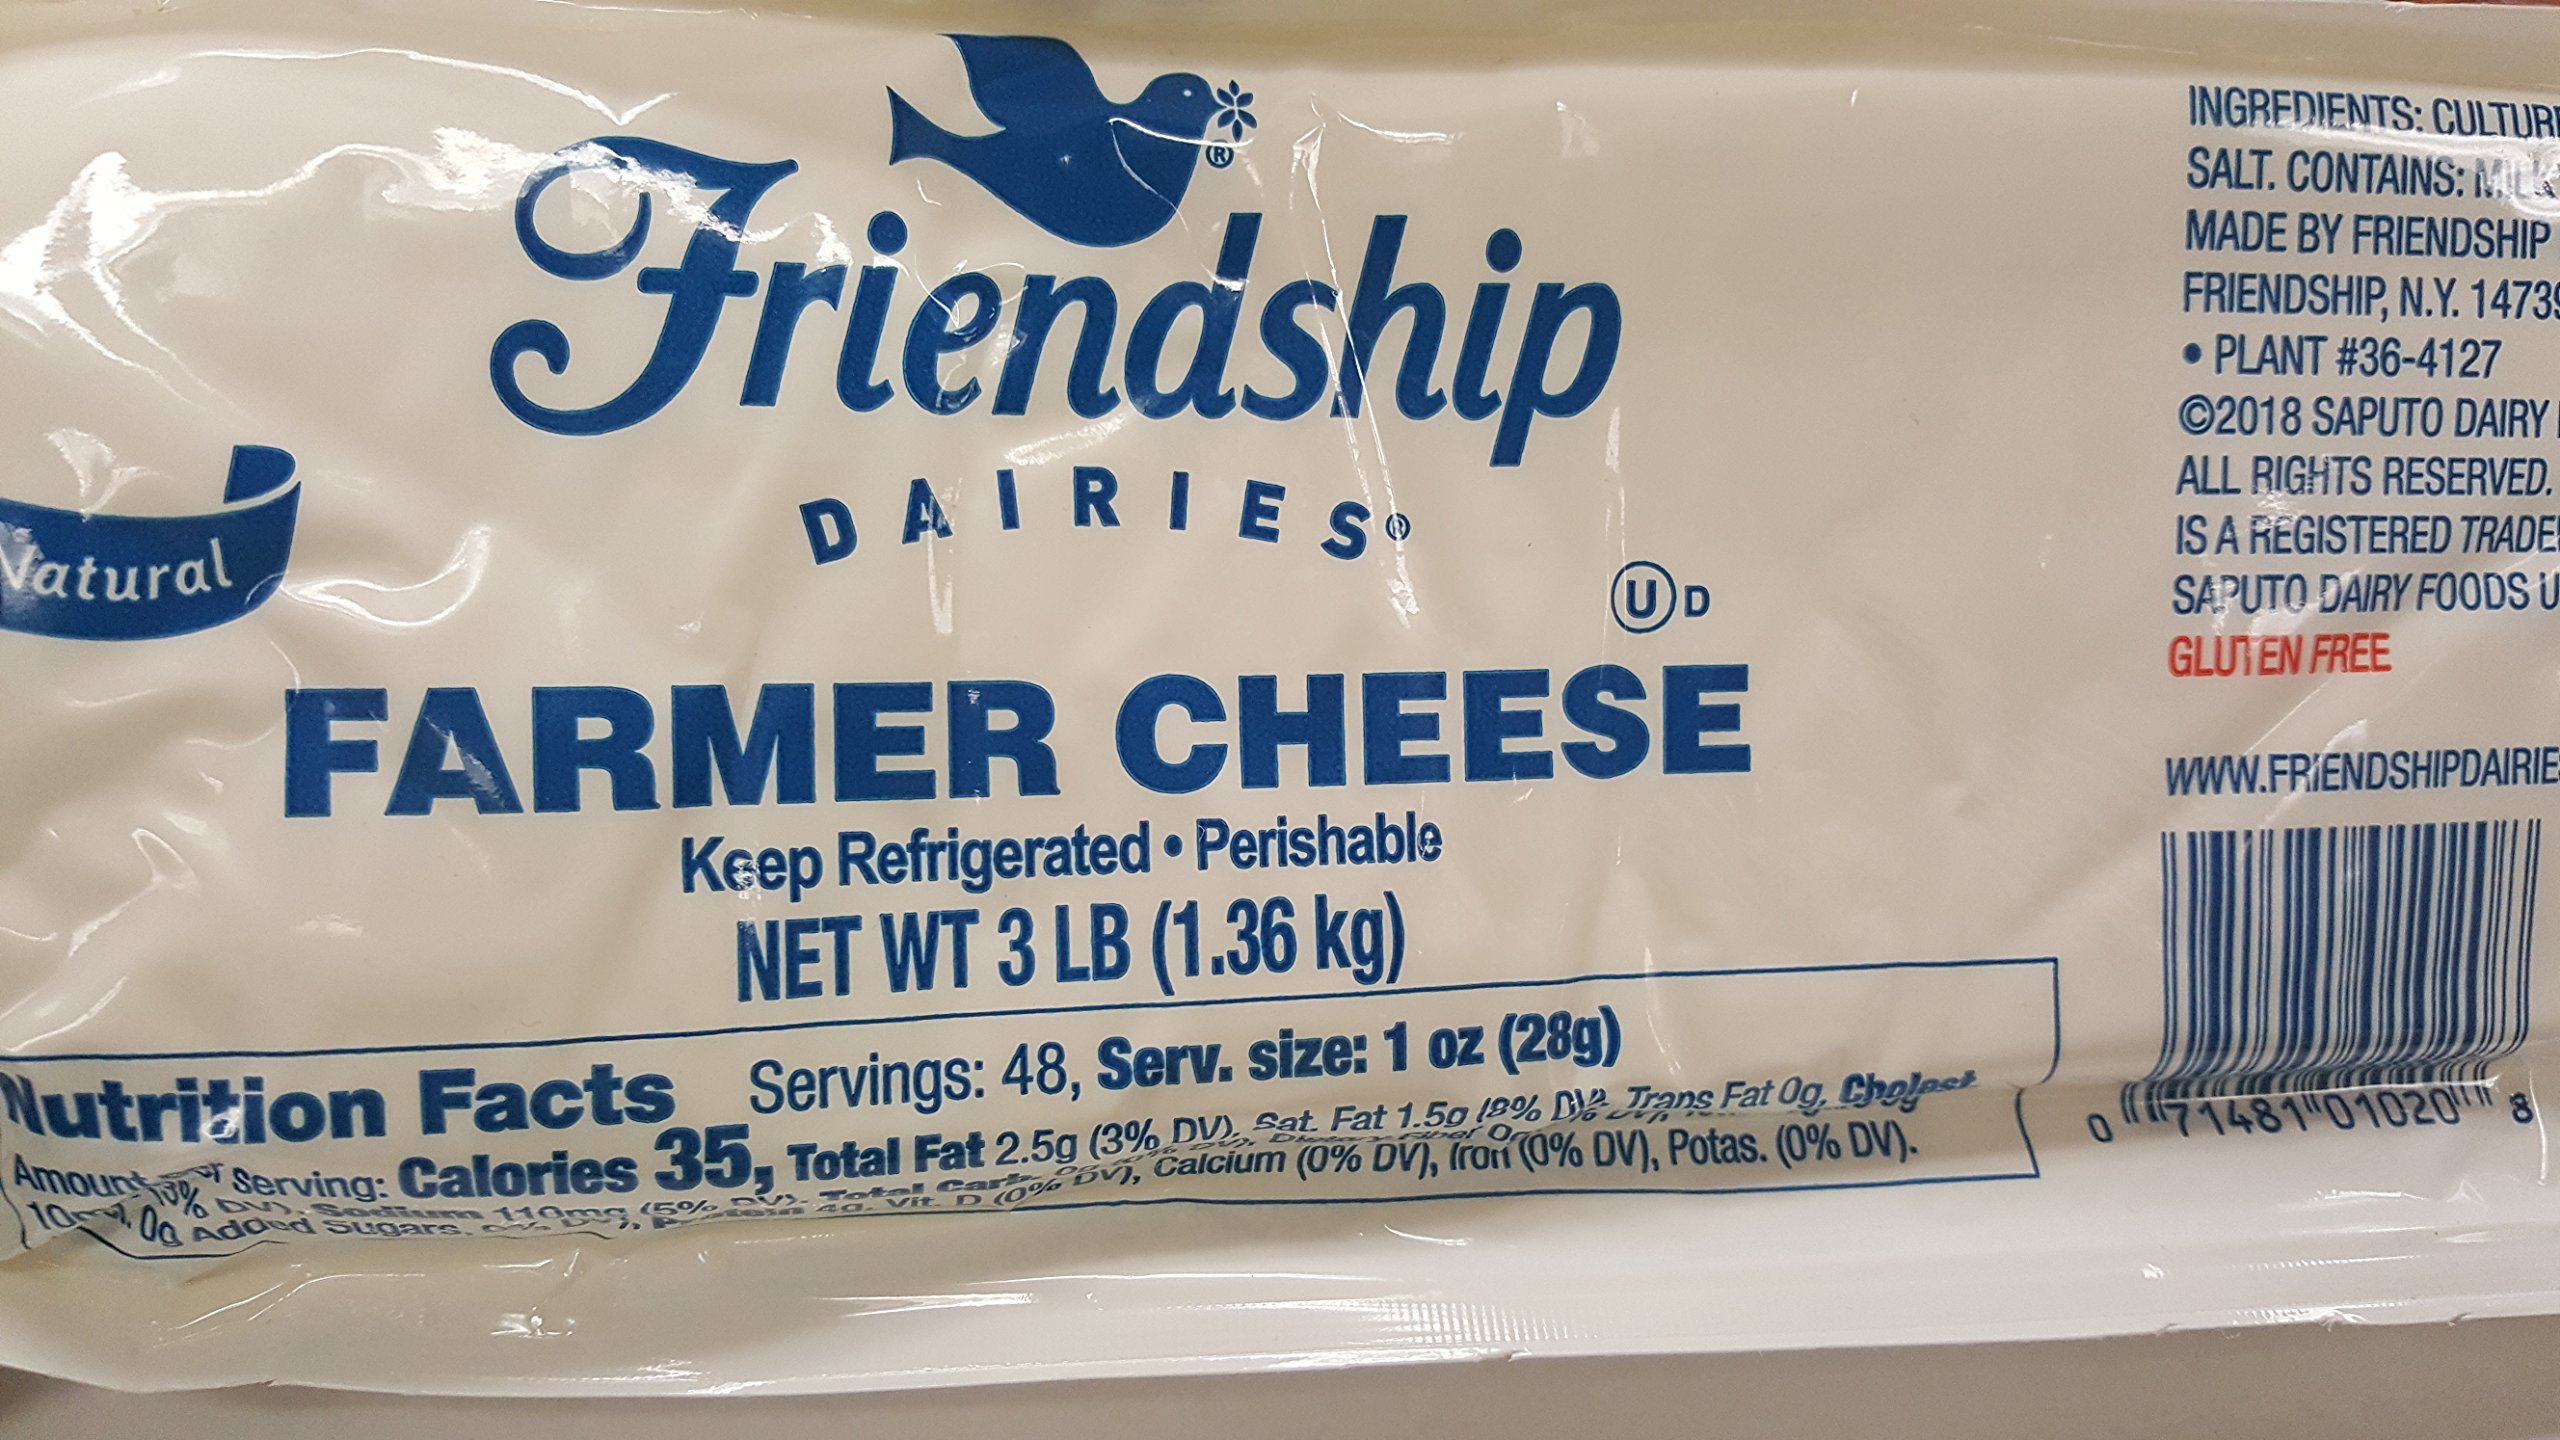 What is Friendship Farmer Cheese